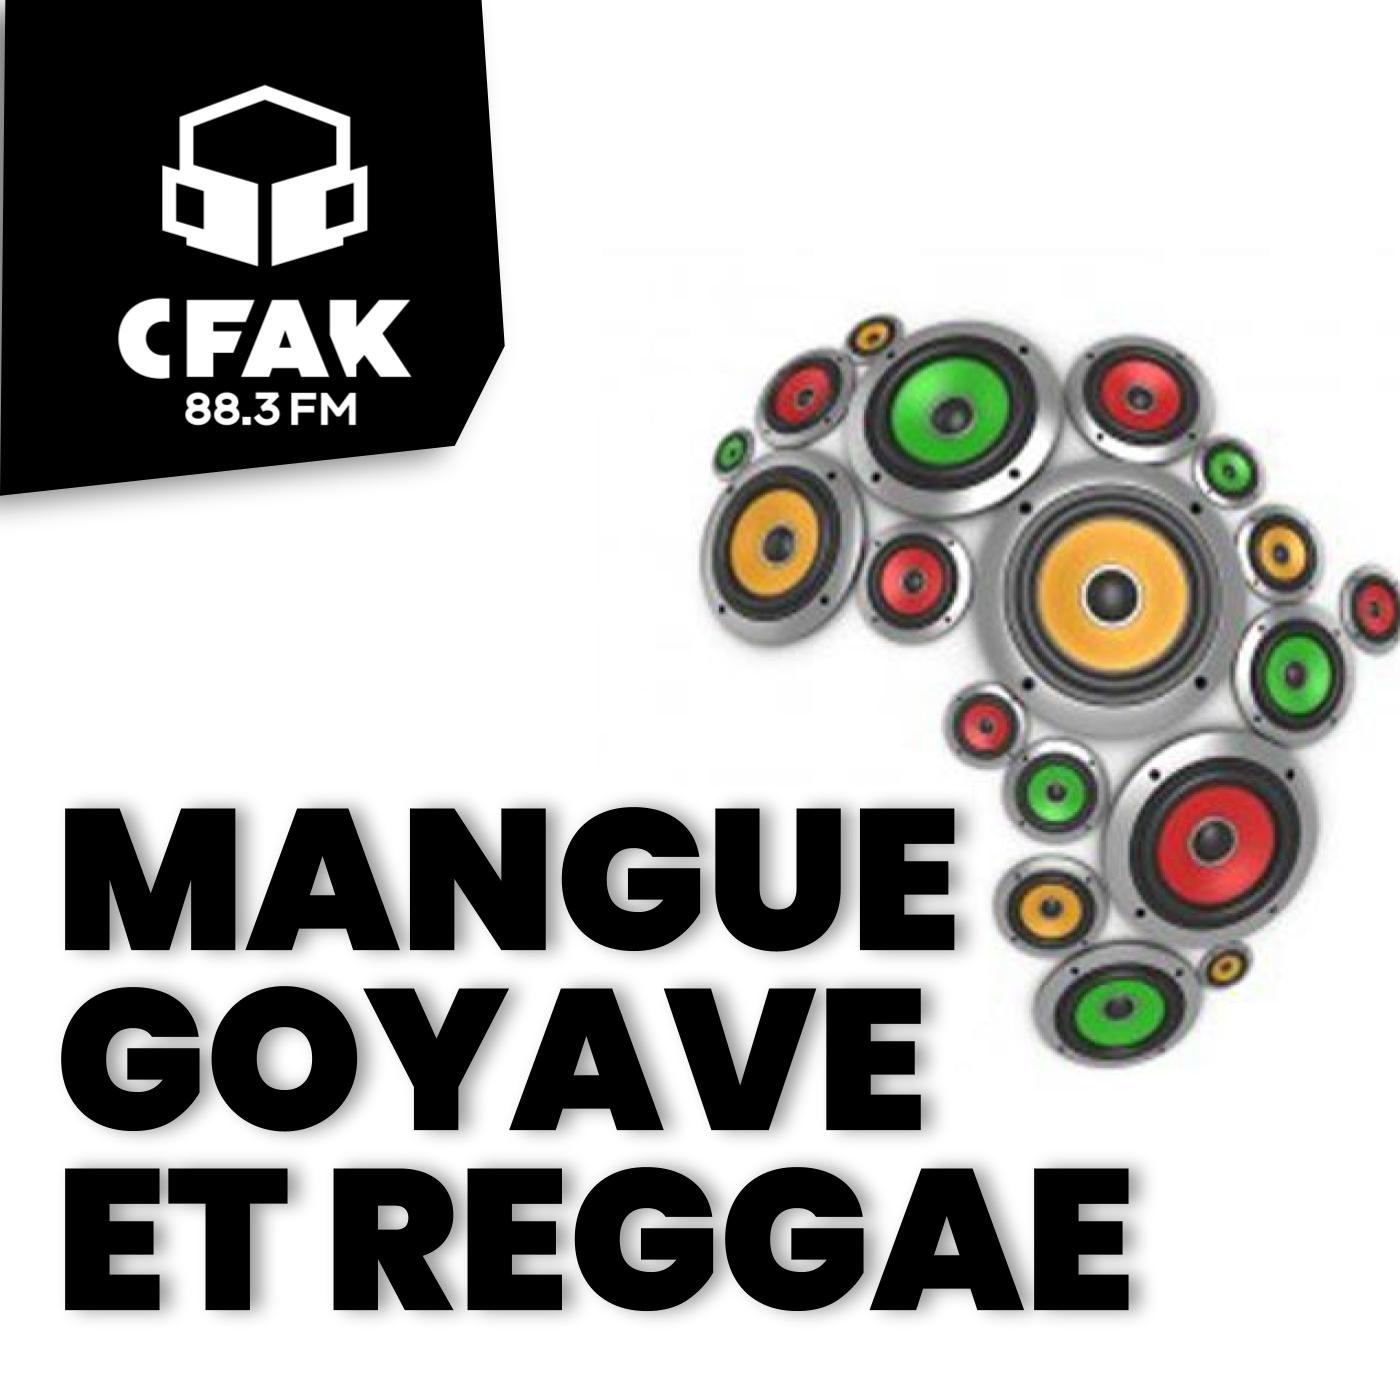 Mangue, goyave et reggae - 16 décembre 2022